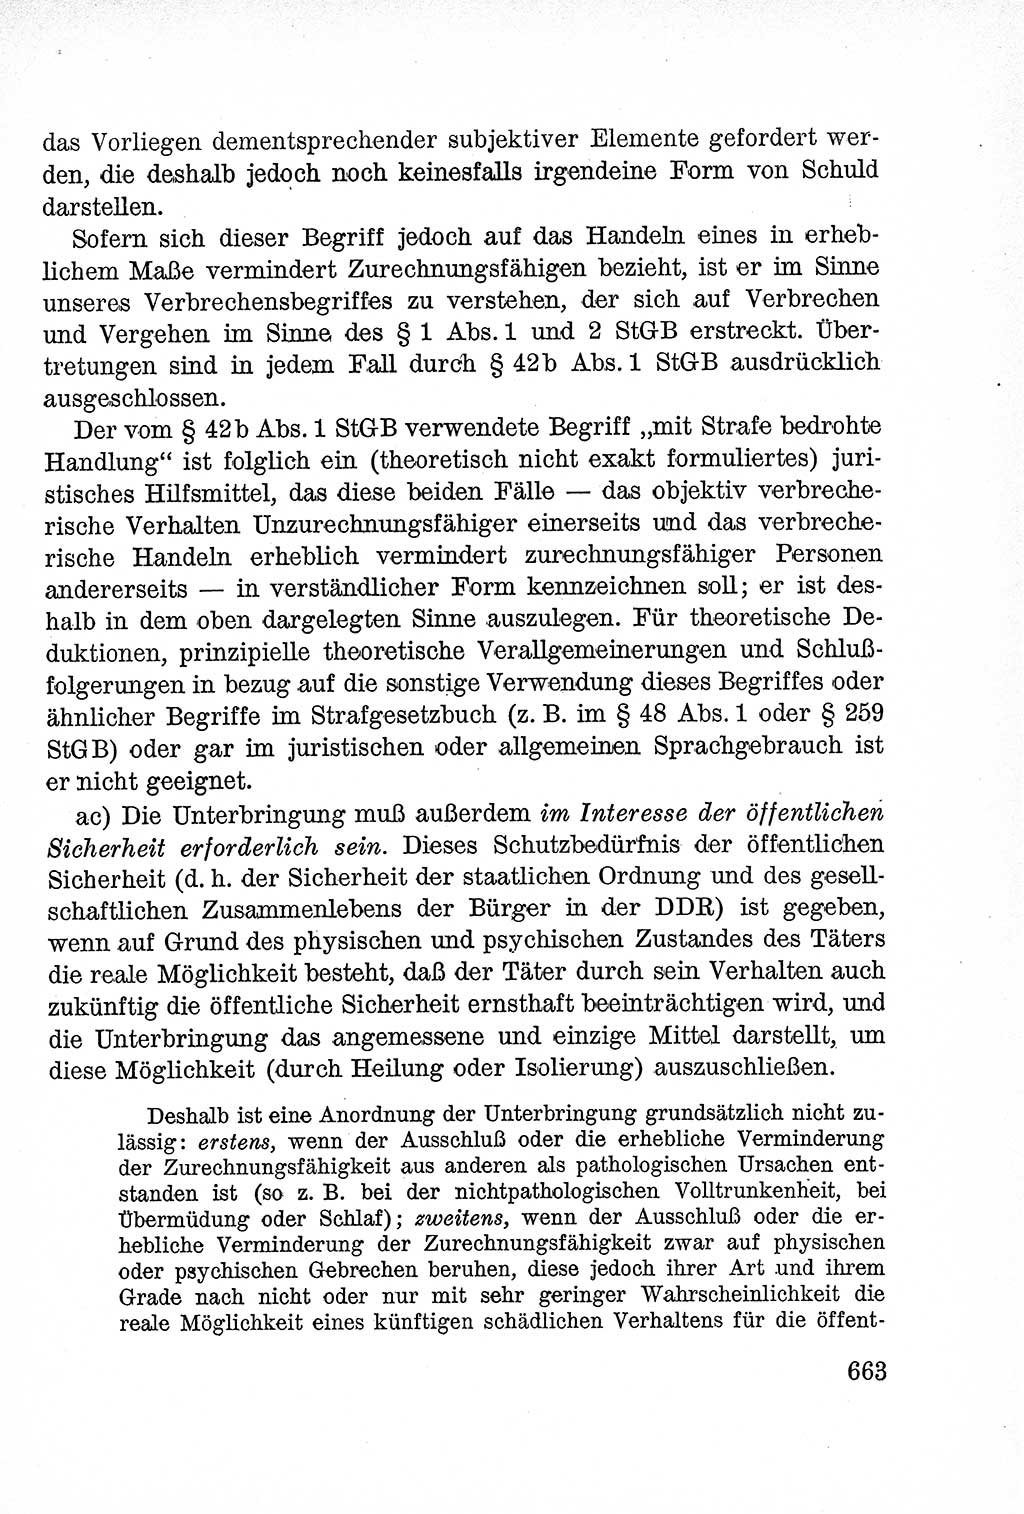 Lehrbuch des Strafrechts der Deutschen Demokratischen Republik (DDR), Allgemeiner Teil 1957, Seite 663 (Lb. Strafr. DDR AT 1957, S. 663)